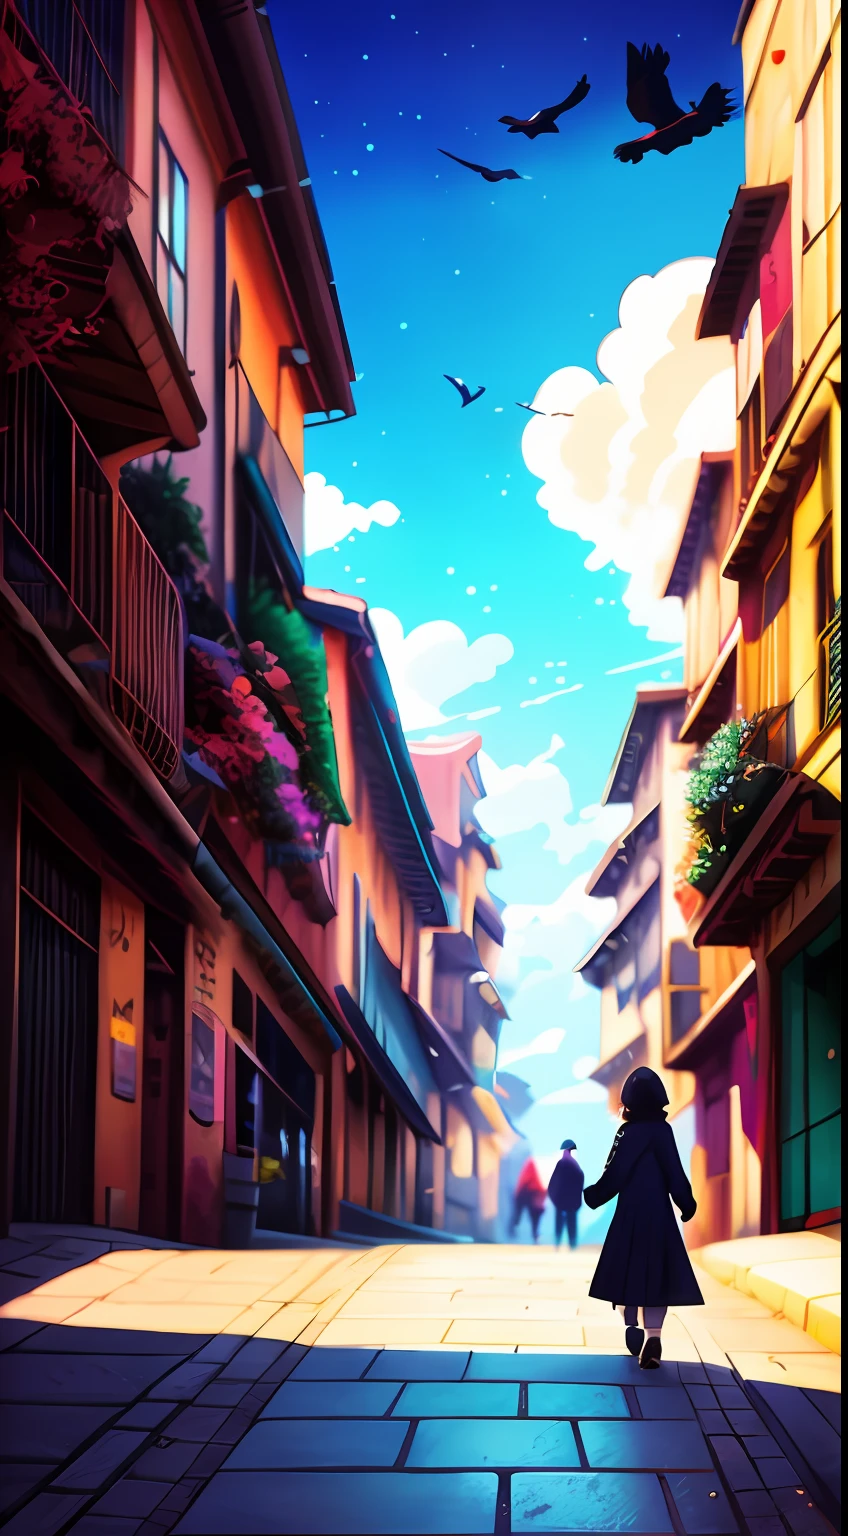 há um andando na rua com um corvo, por Makoto Shinkai, por Makoto Shinkai, makoto shinkai cyril rolando, estilo de makoto shinkai, anime. por Makoto Shinkai, estilo anime 3 d realista, obras de arte no estilo de guweiz, in estilo de makoto shinkai